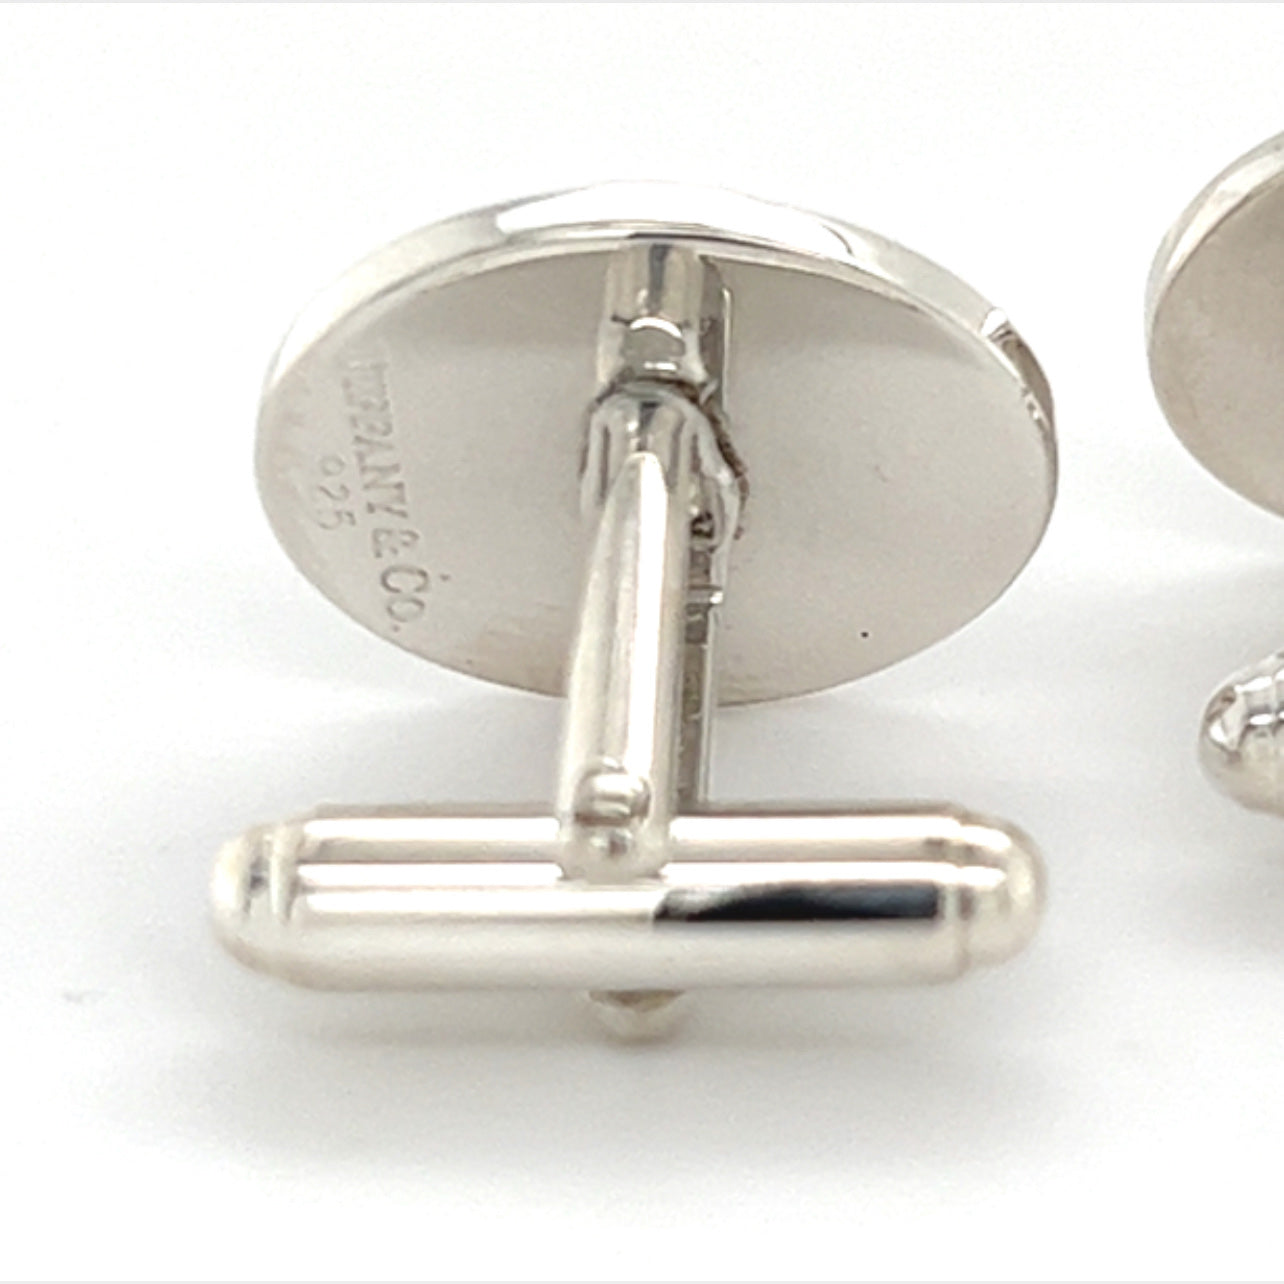 Tiffany & Co Estate Sterling Silver Cufflinks 12 Grams TIF253 - Certified Fine Jewelry